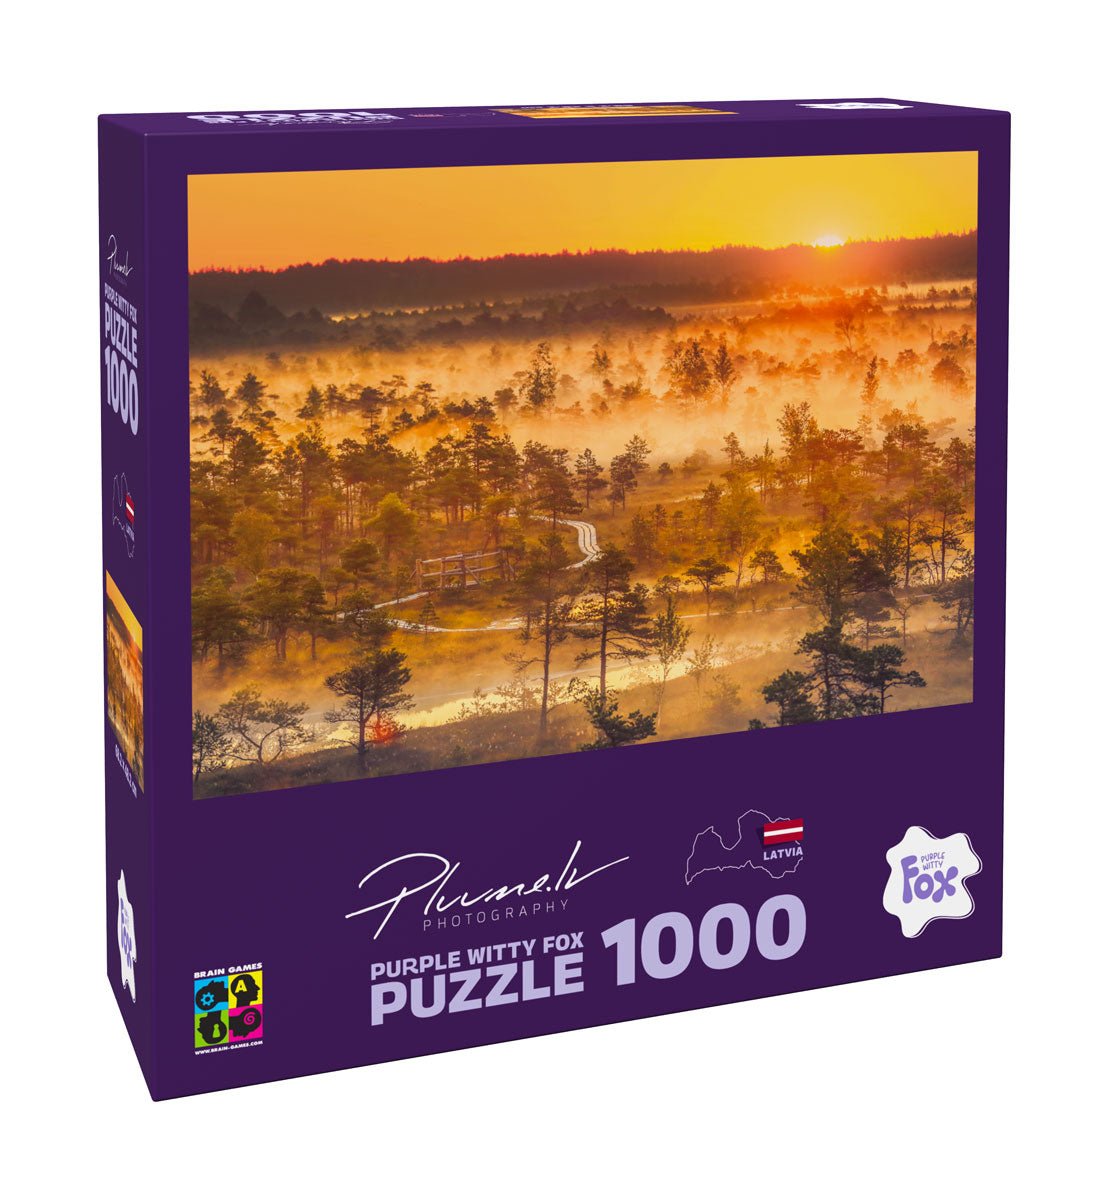 Purple Witty Fox 1000 Puzle Mārtiņš Plūme, Latvija, Ķemeru purvs